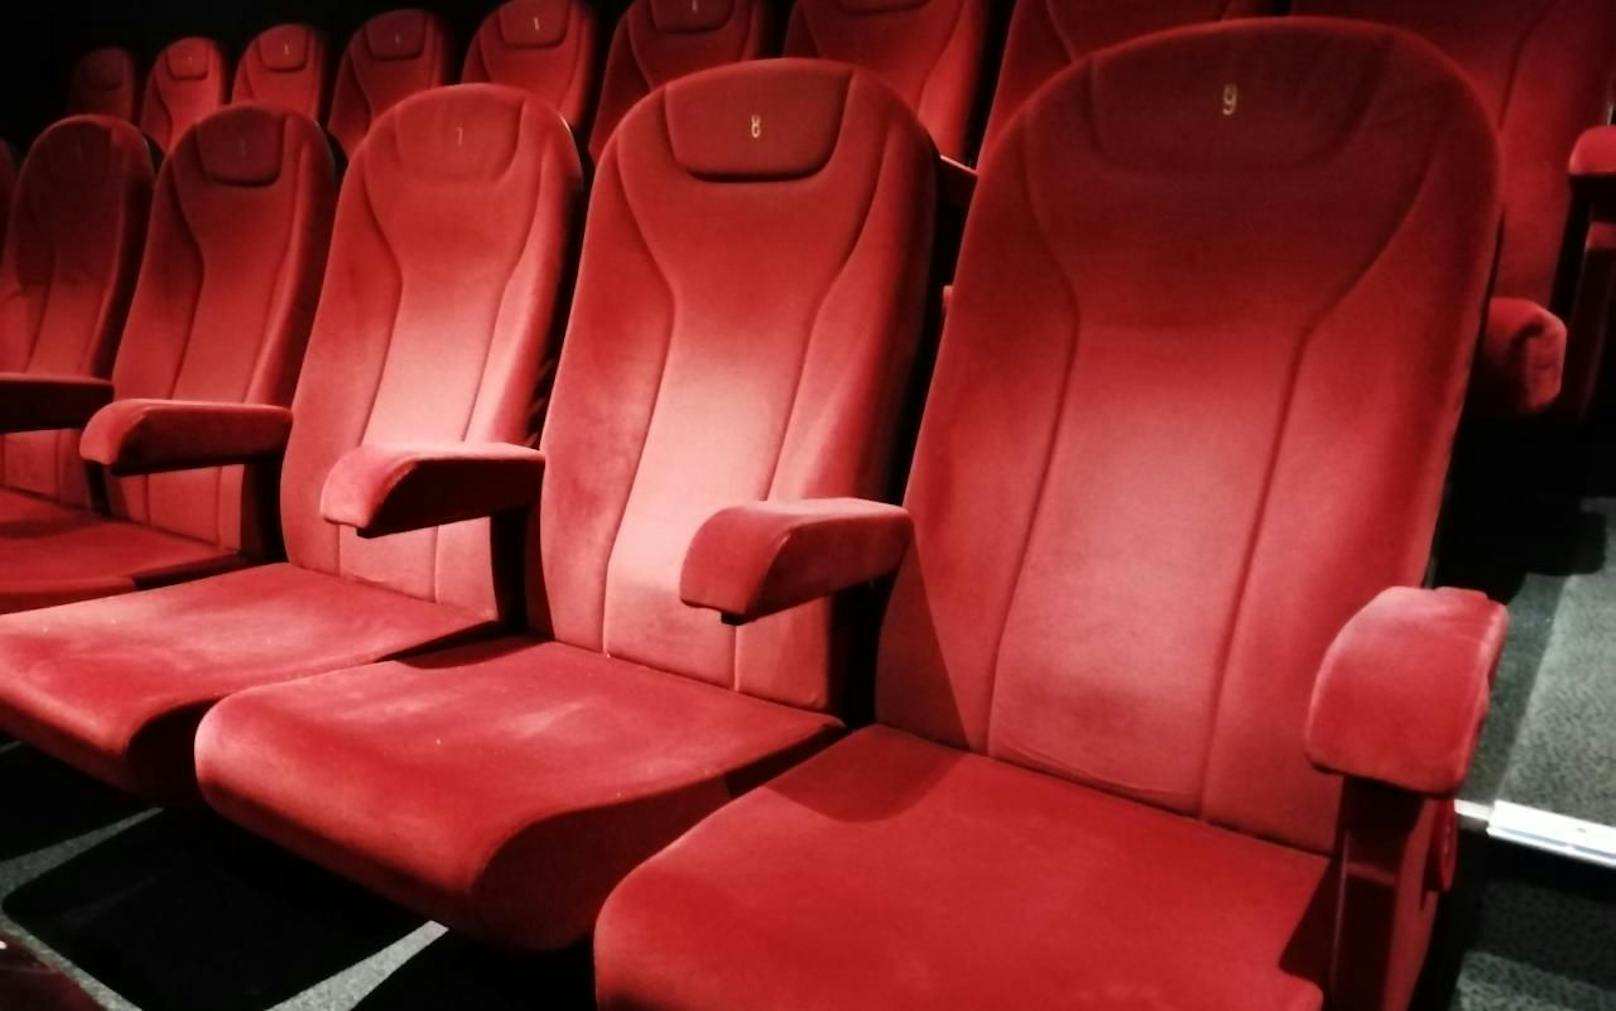 Echte Kinositze für den Filmspaß zu Hause gibt es jetzt im Haydn Kino auf der MaHü. 